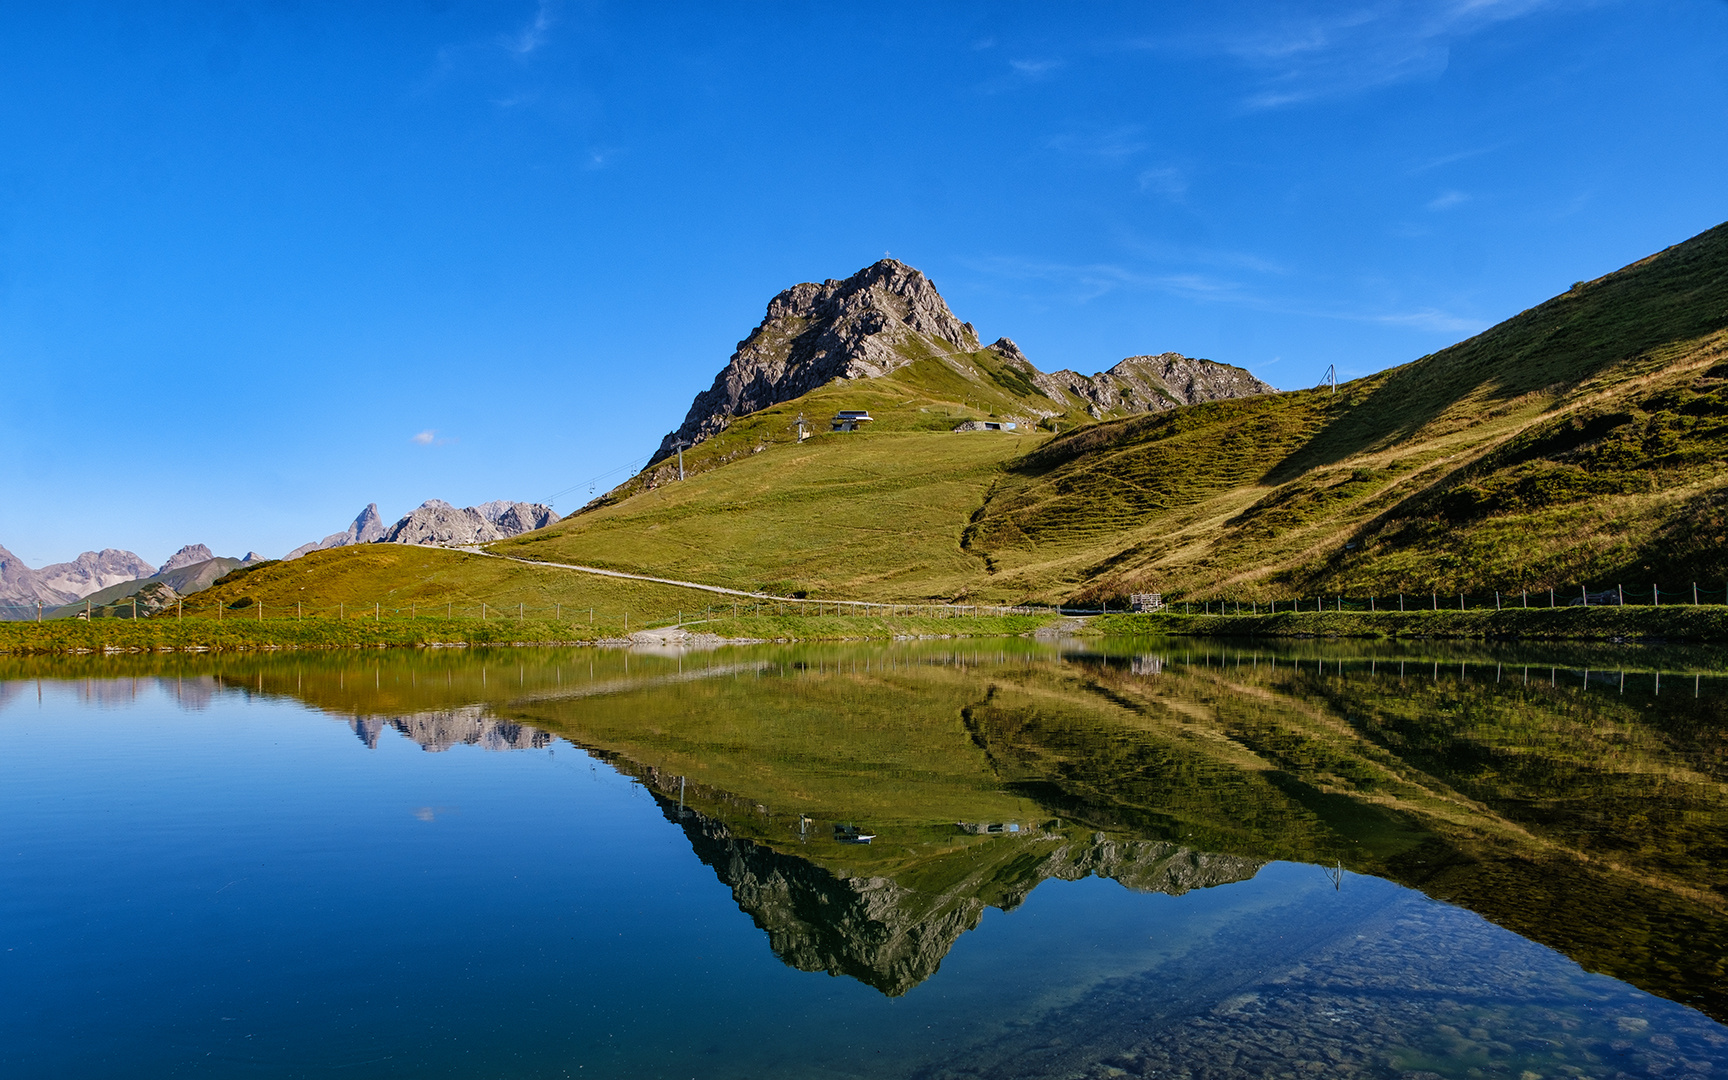 Die Kanzelwand in Tirol, Wasserspiegelung